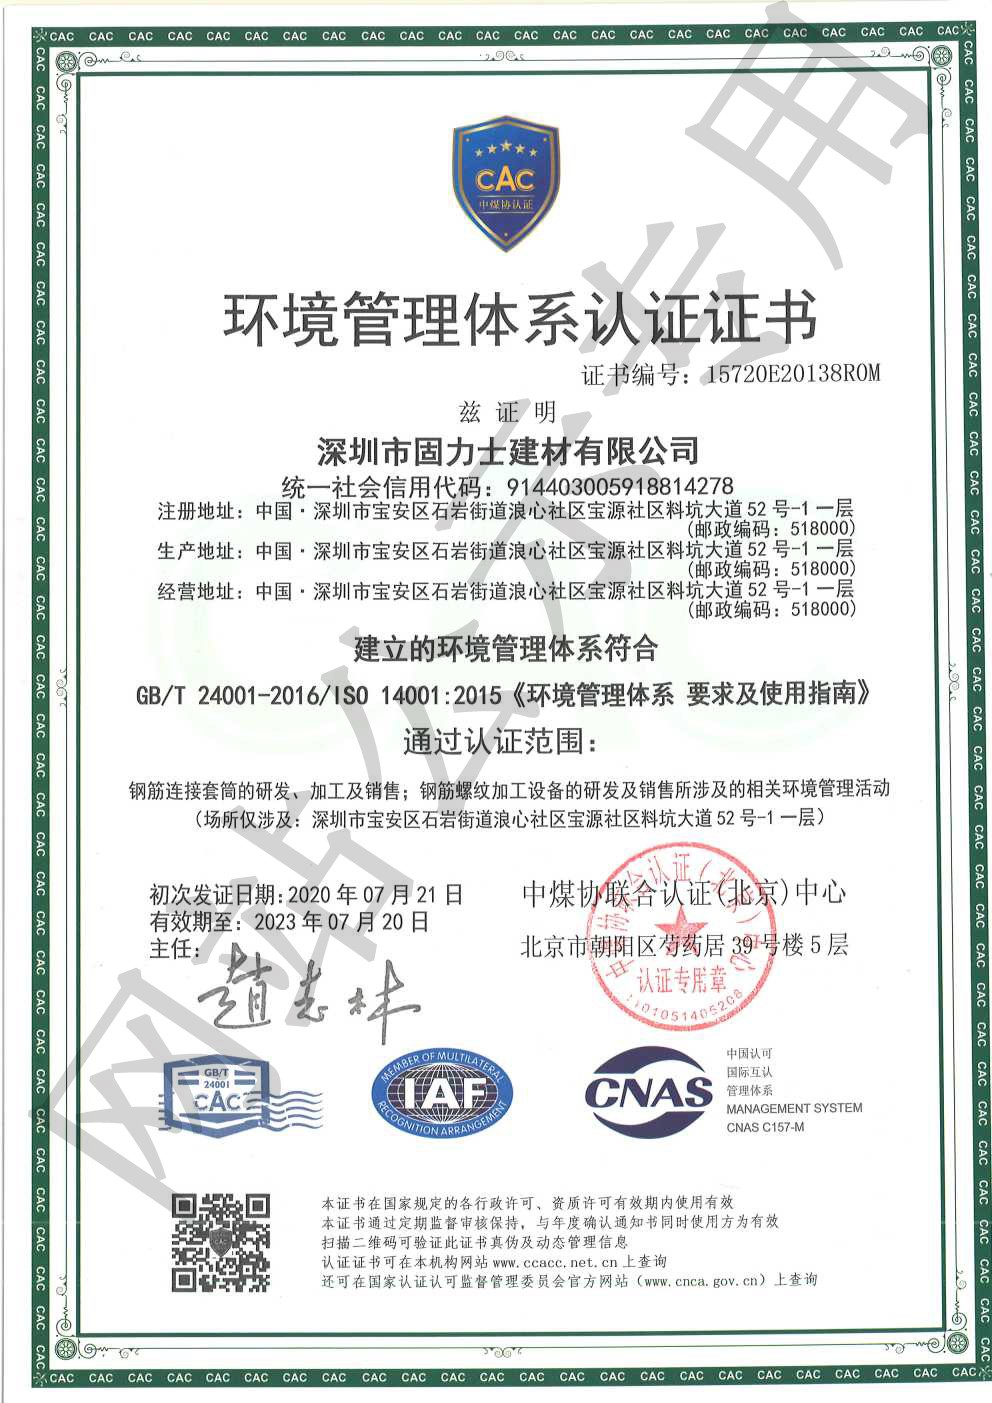 乌兰ISO14001证书